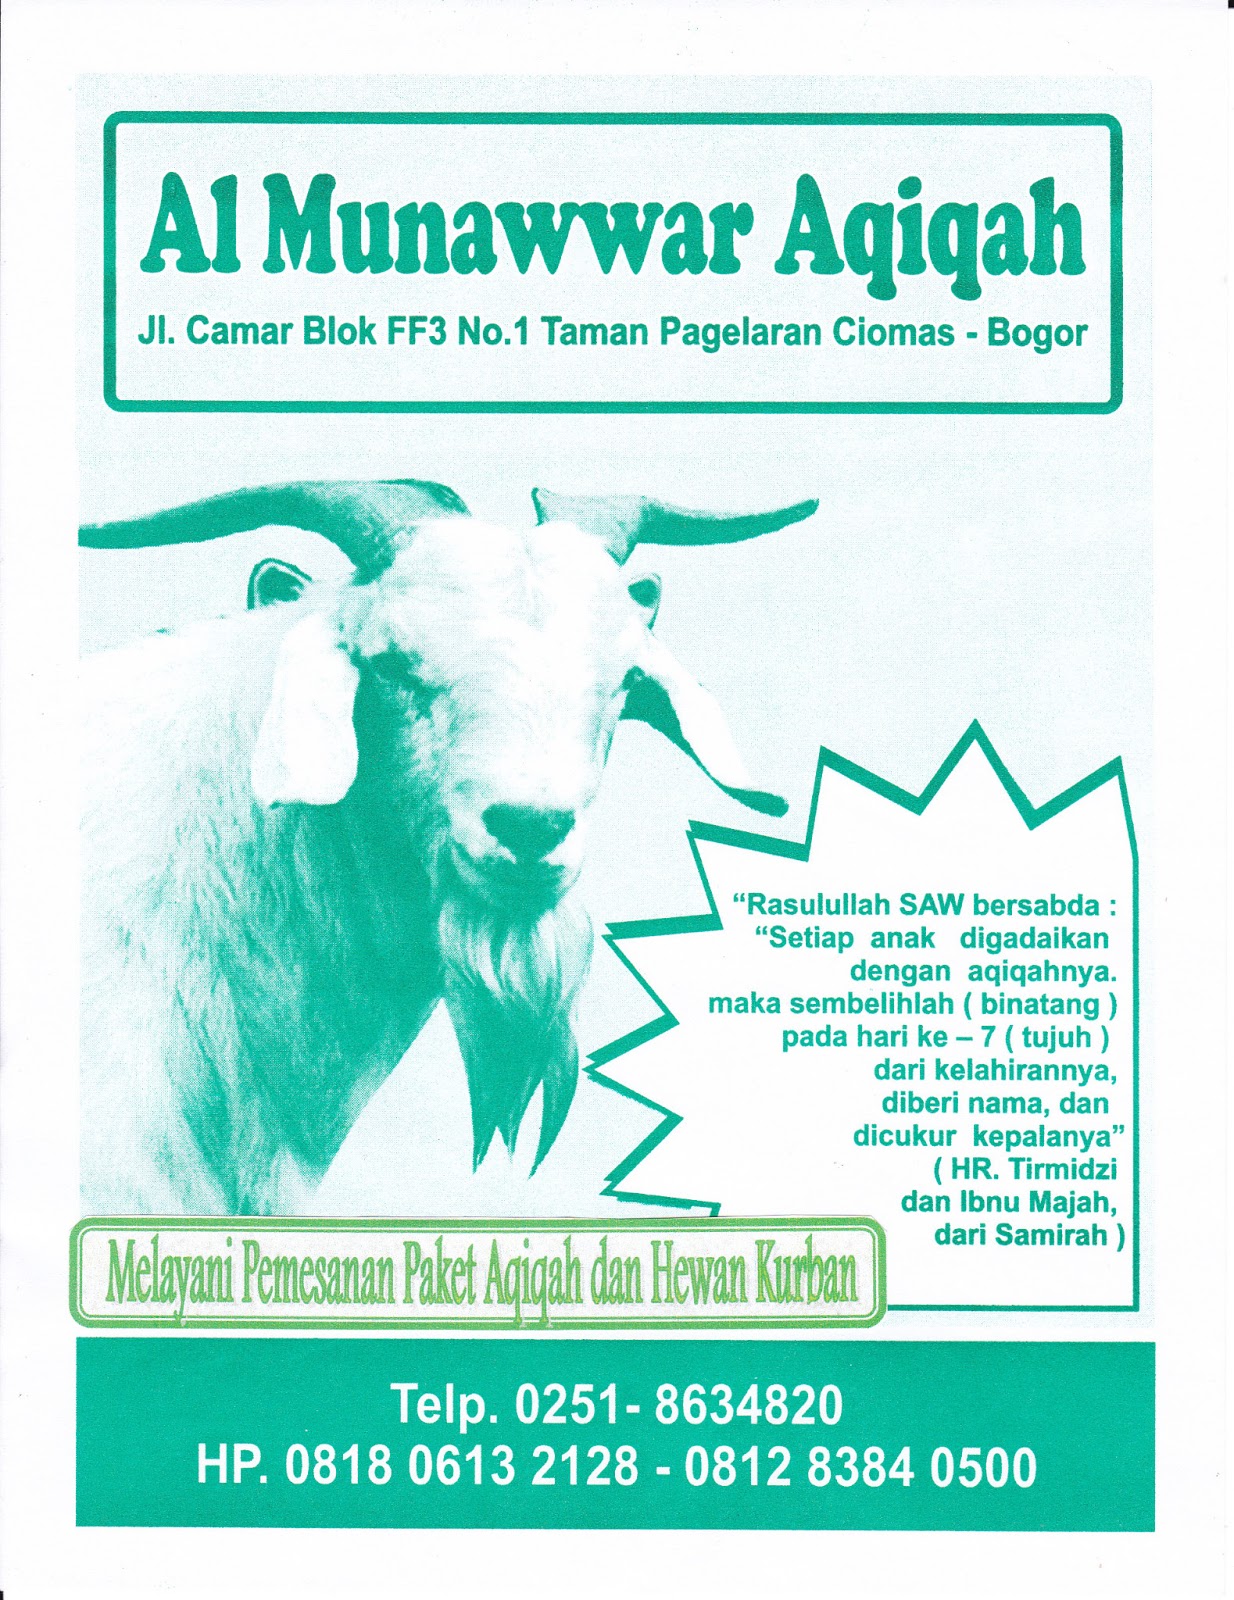 Al Munawwar Aqiqah